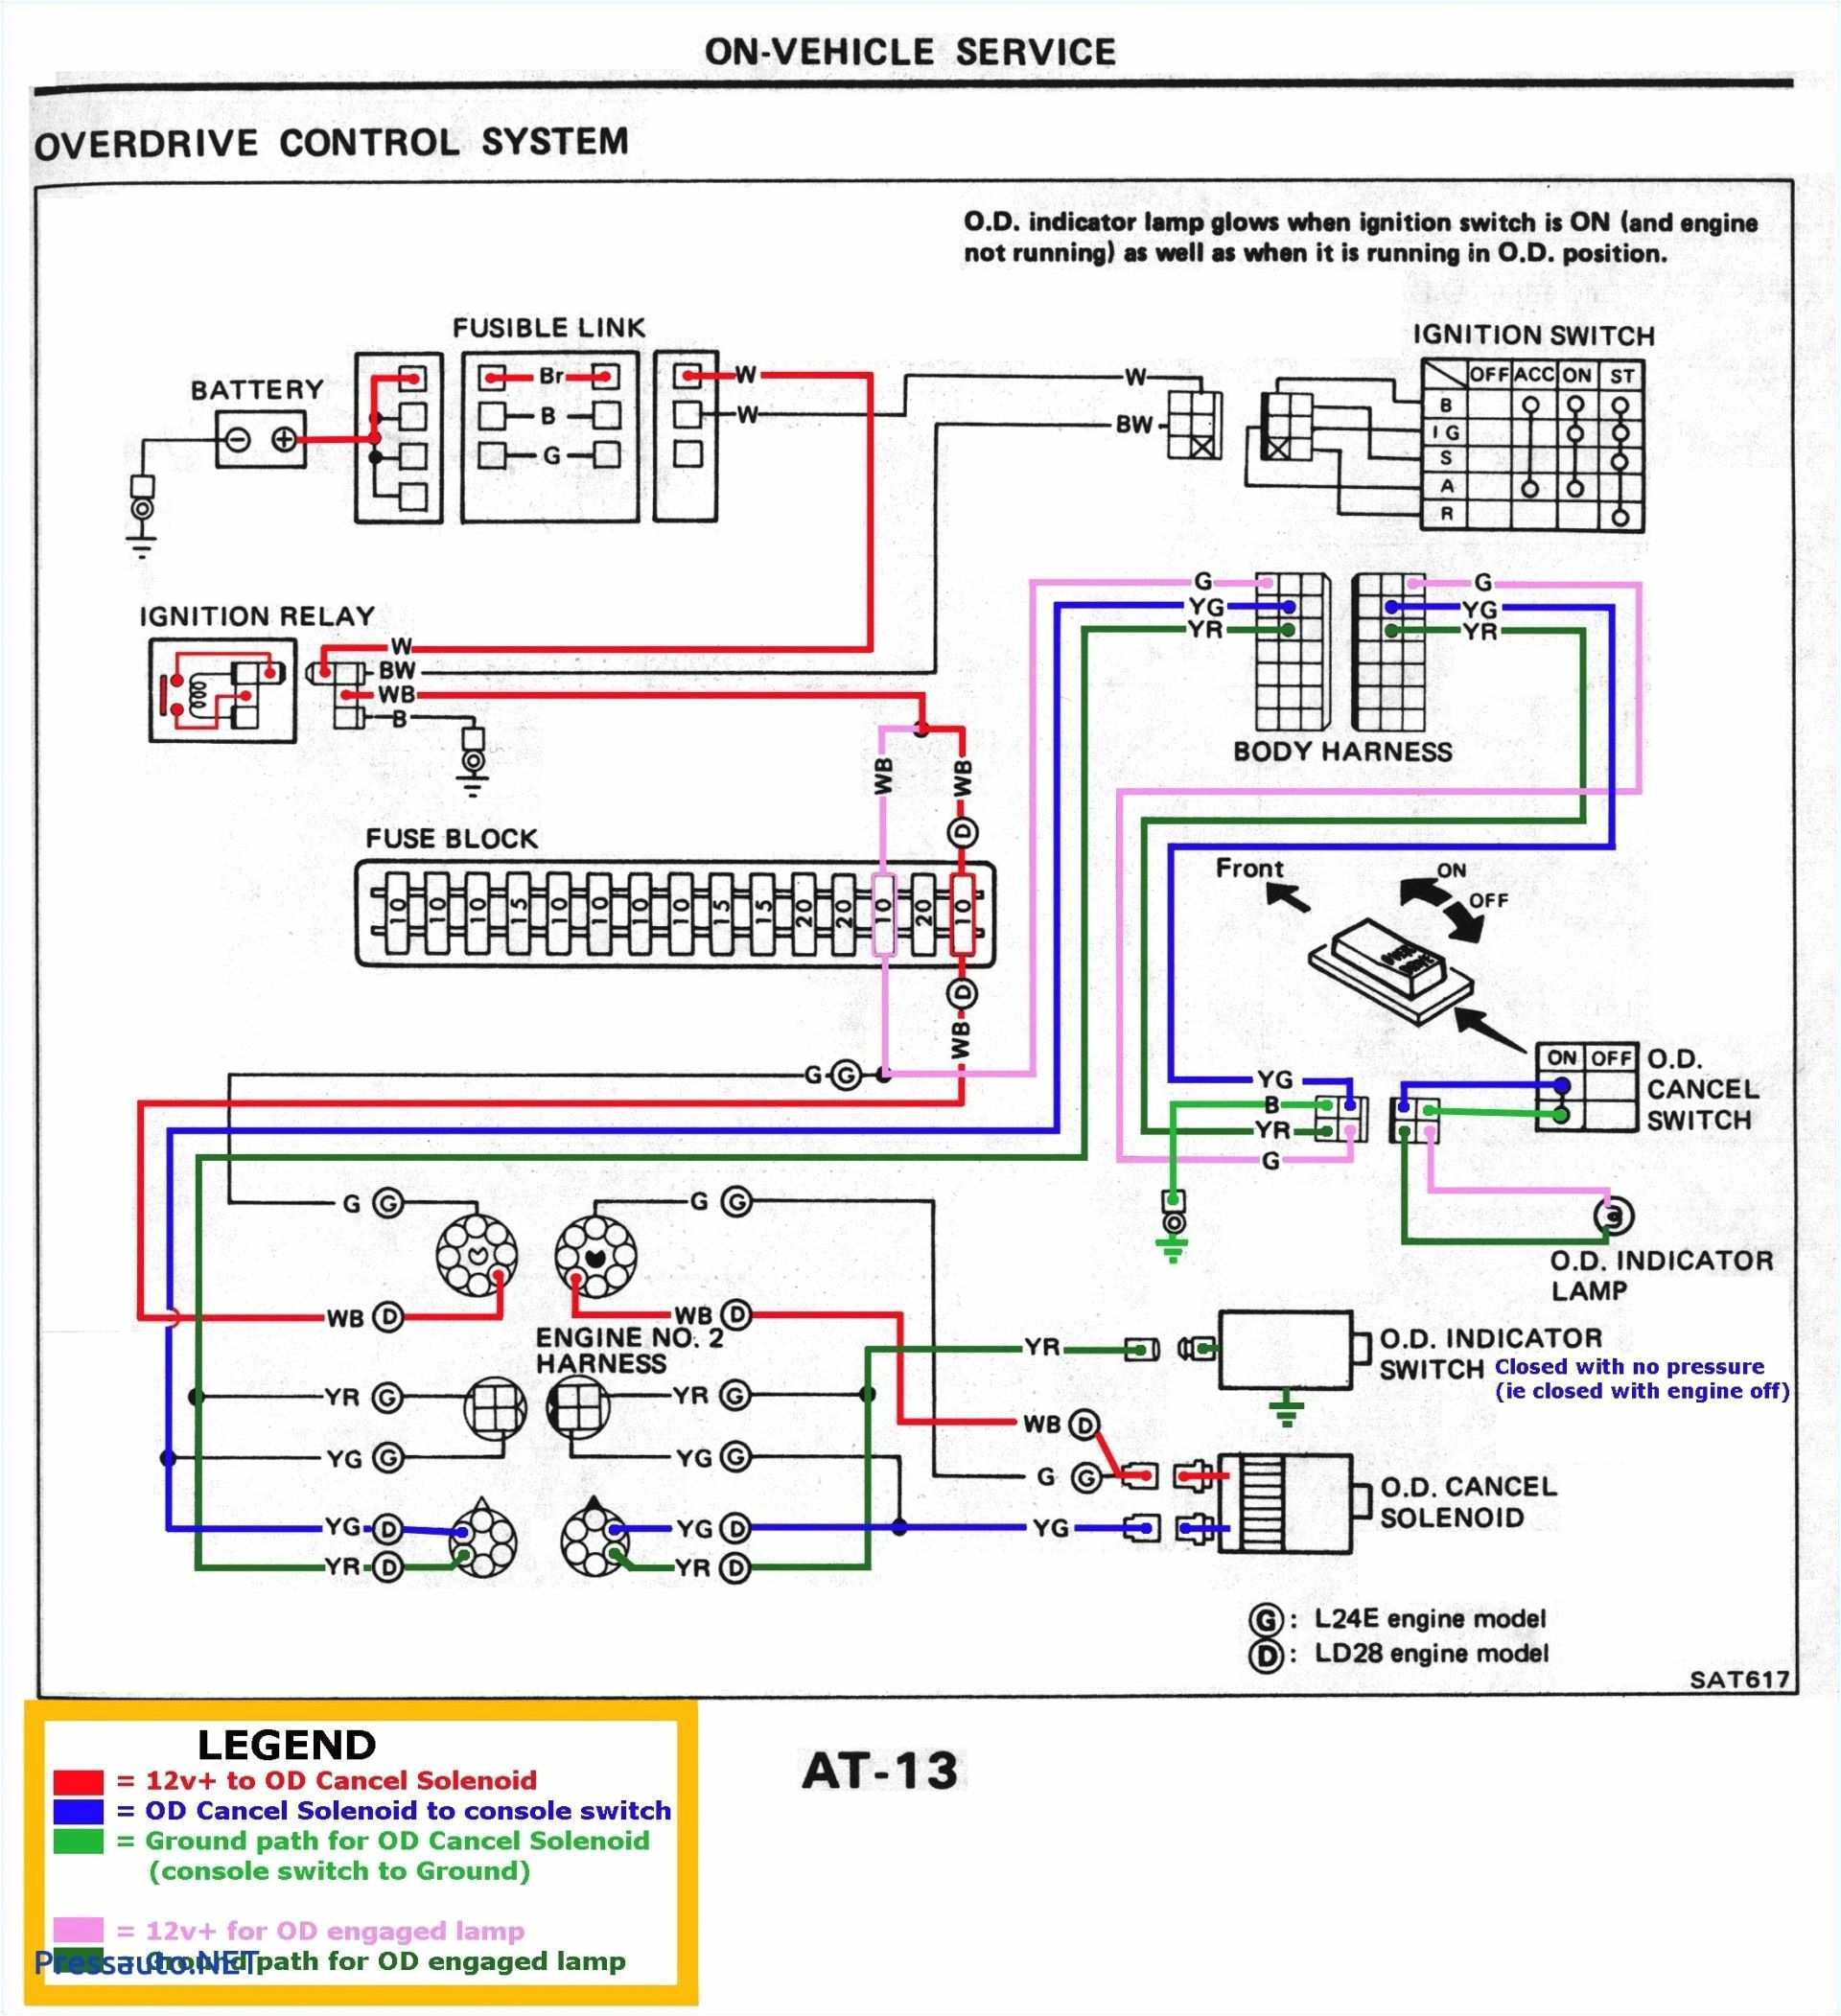 Light Bulb Wiring Diagram Ach Wiring Diagram Model 8 Blog Wiring Diagram